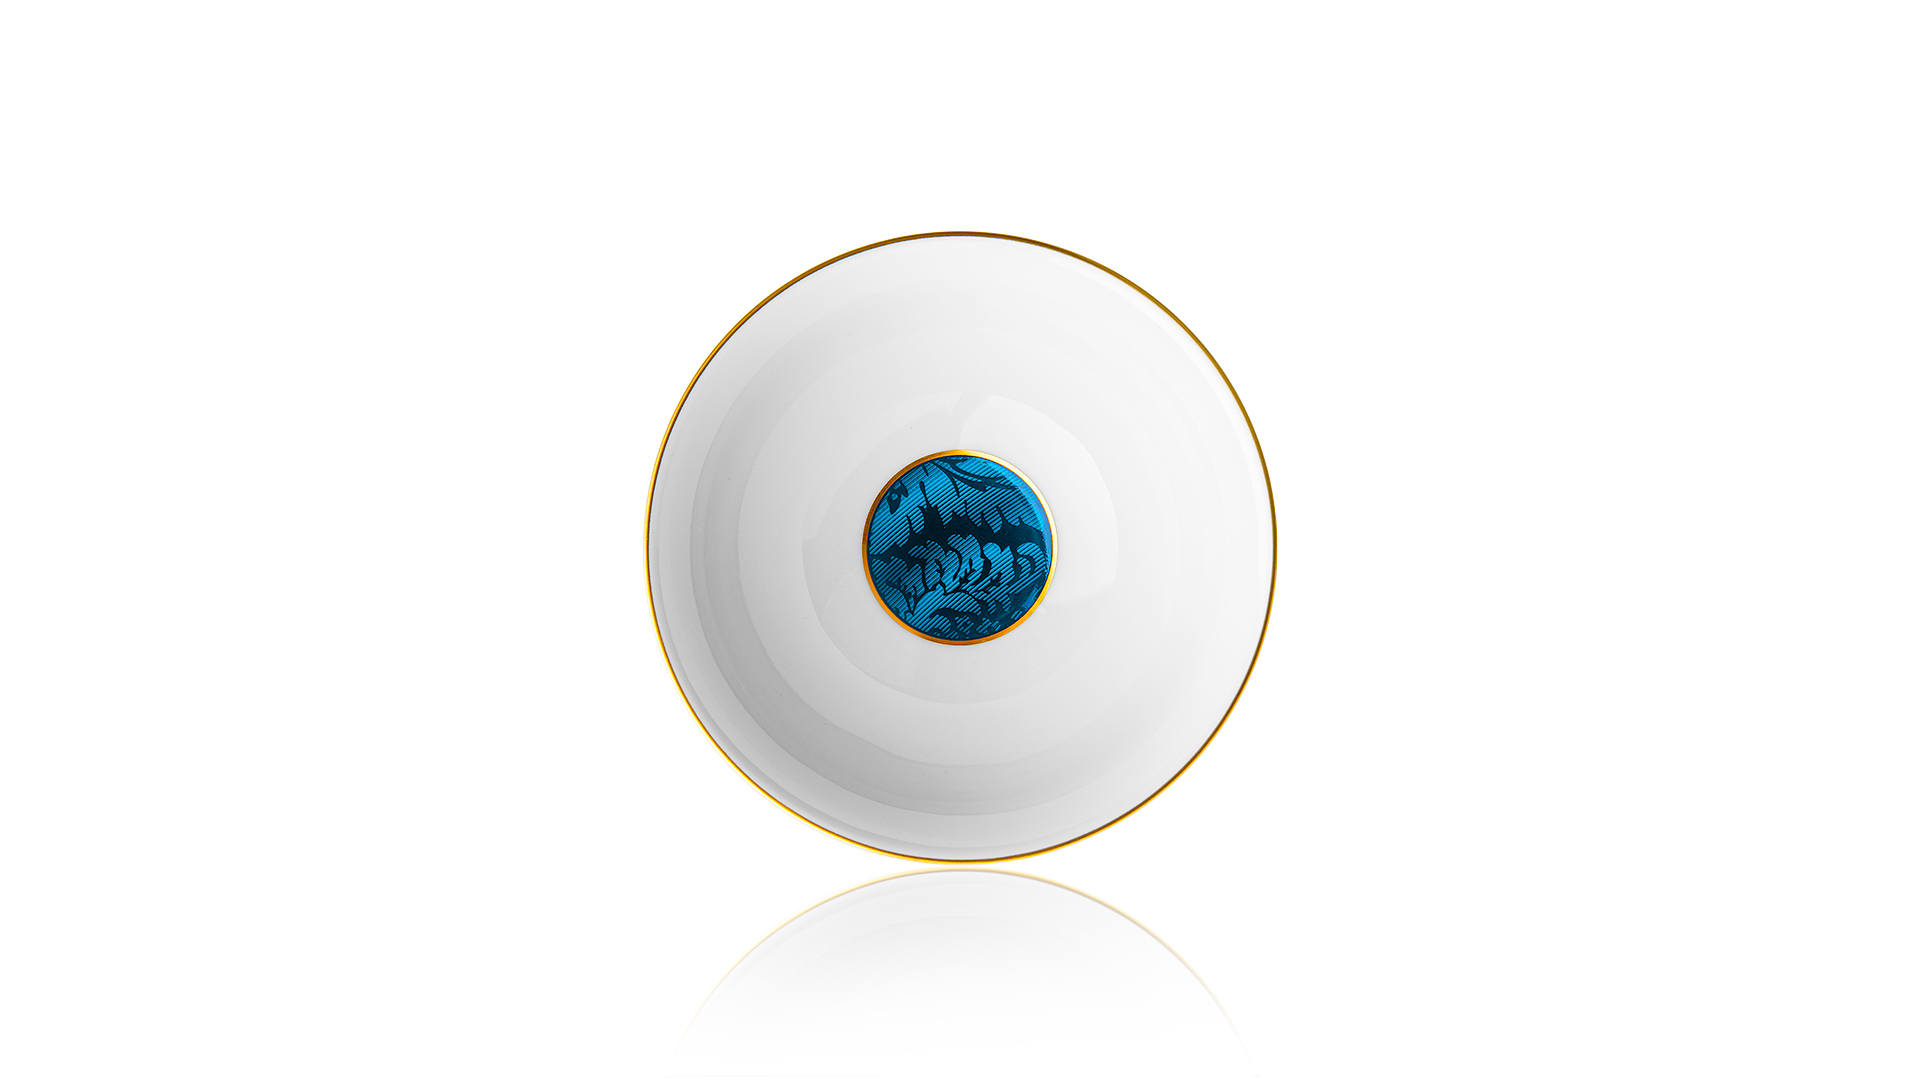 Сервиз столовый Haviland Дамасский узор на 6 персон 41 предмет, золотой, синий декор